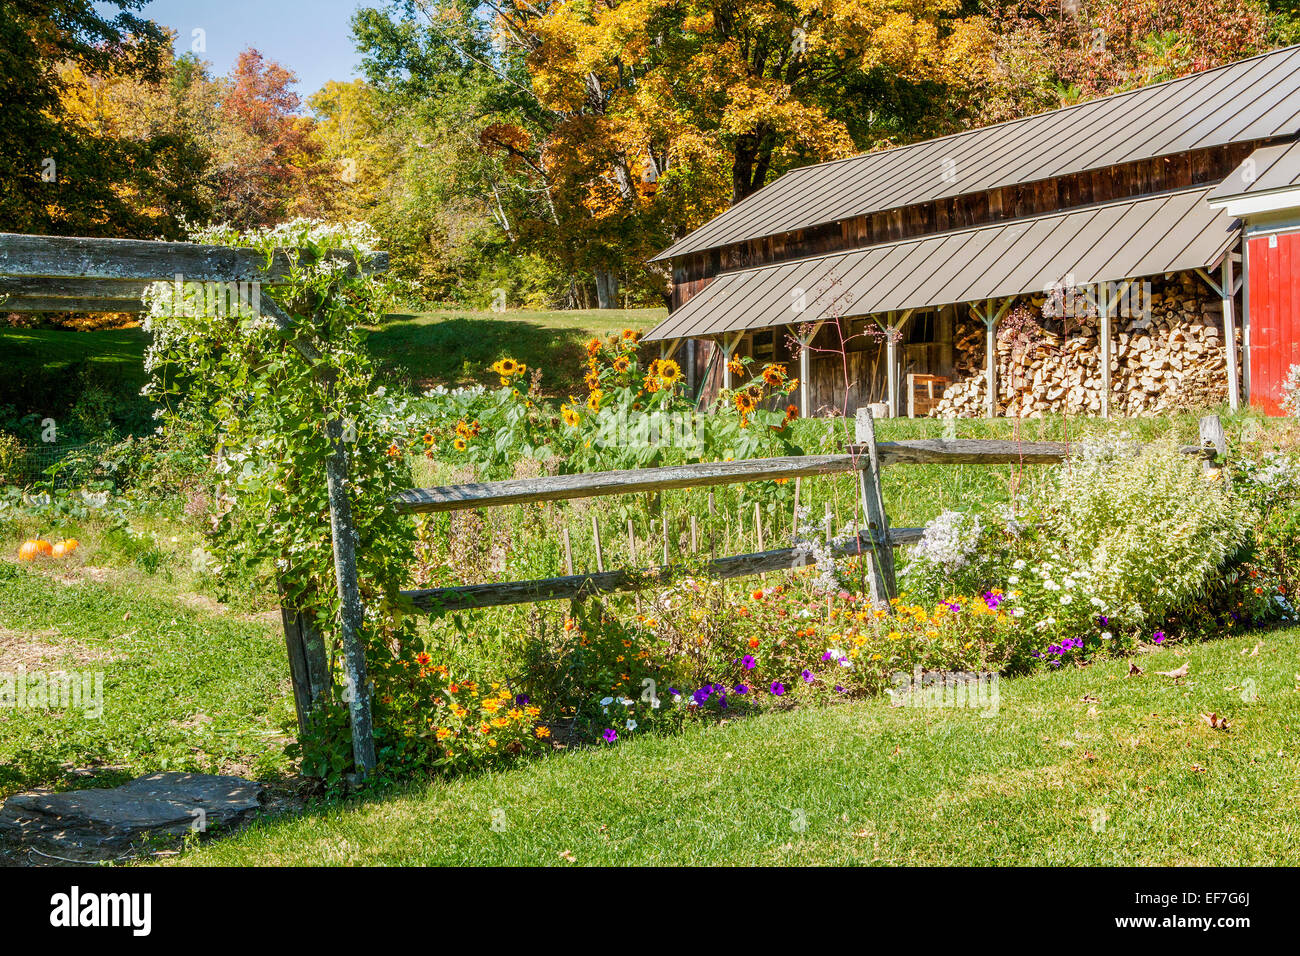 Automne scenic - Chalet jardin avec clôture en bois en lisse, fleurs et hangar avec toit métallique. Feuillage coloré à l'arrière. Banque D'Images